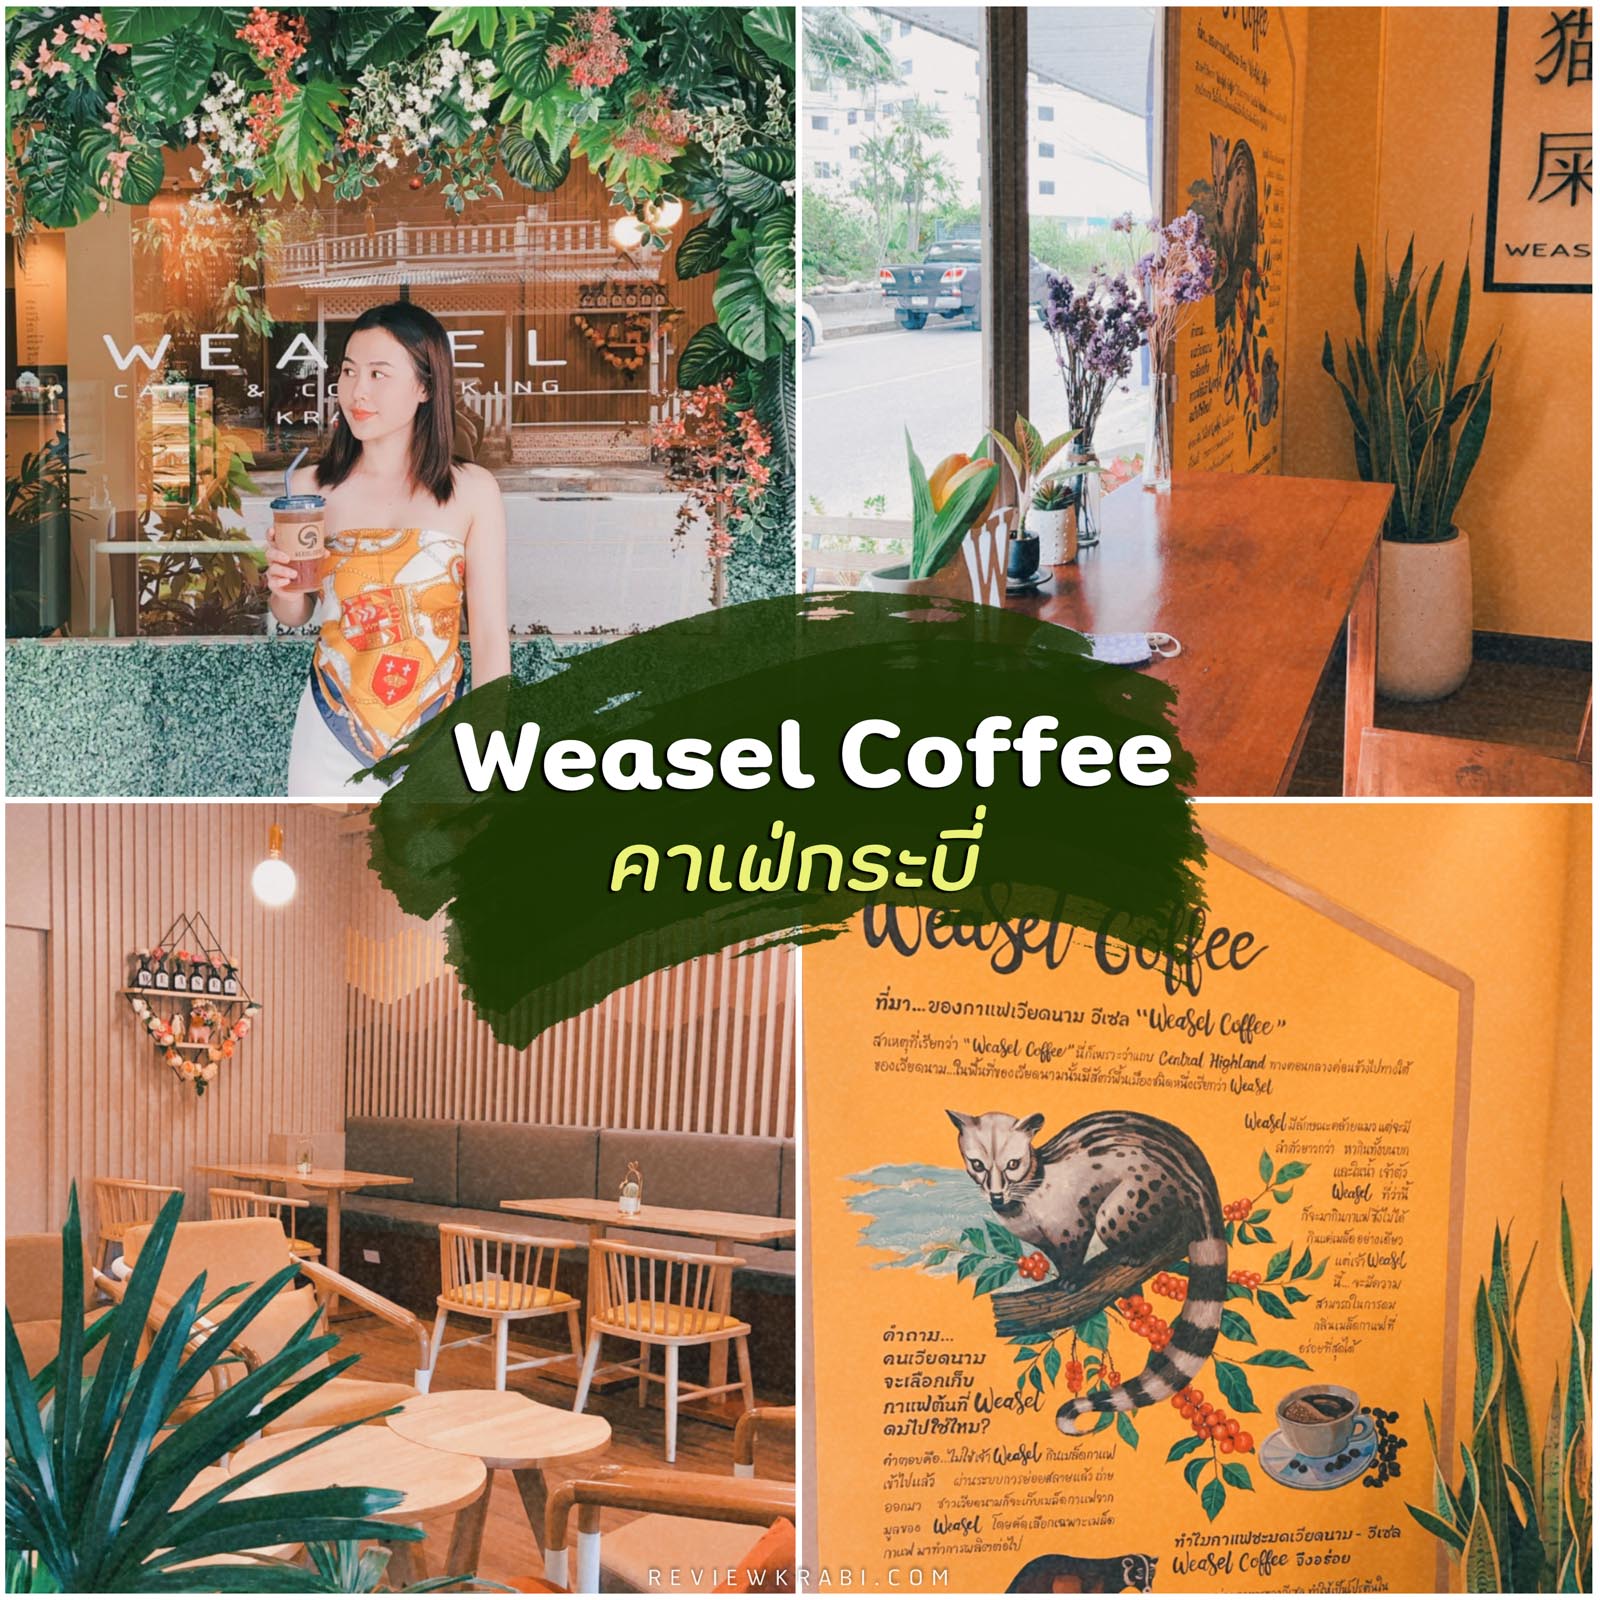 Weasel coffee กาแฟชะมด คาเฟ่กระบี่ ร้านกาแฟเพื่อสุขภาพ อร่อยเว้ออ